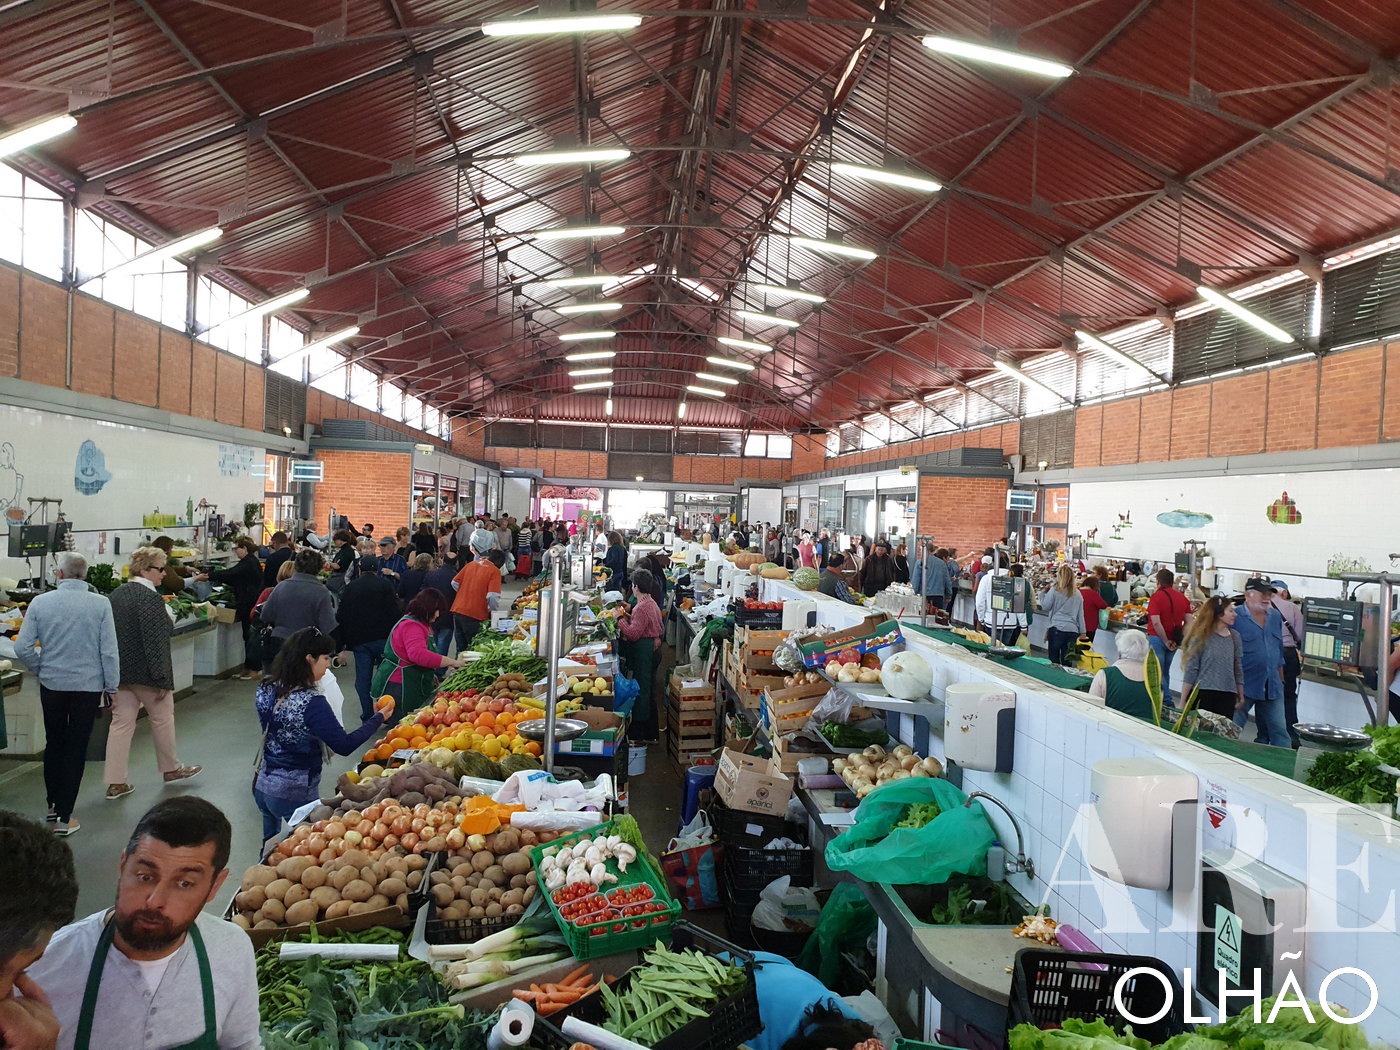 Inside Olhão's Fruit Market